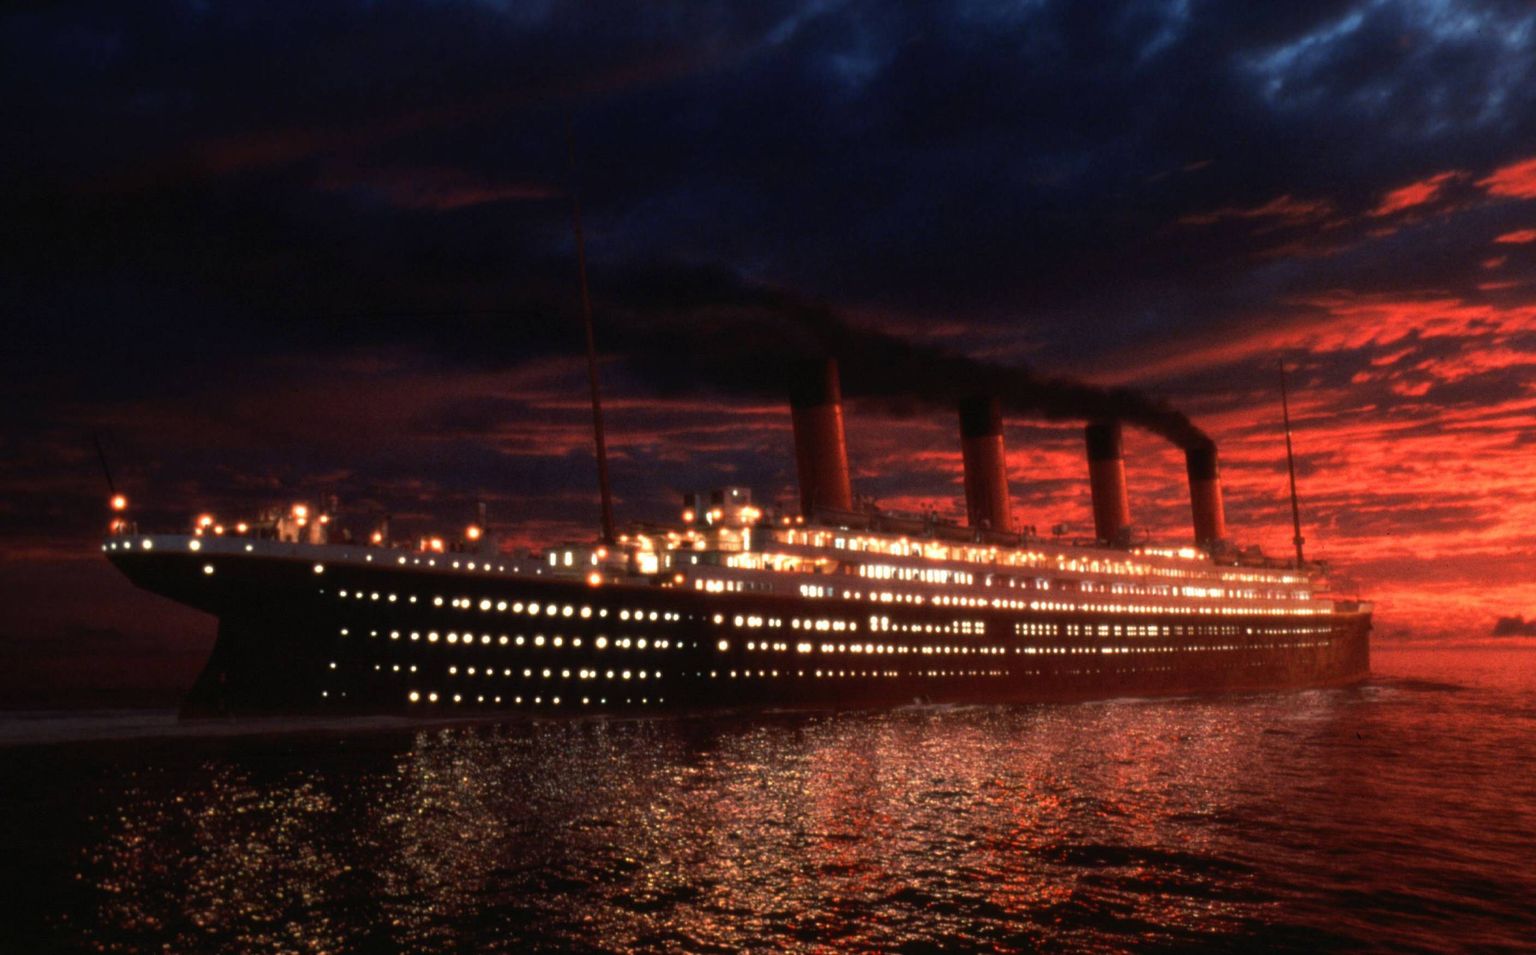 Копия знаменитого судна «Титаник», разработанная компанией Blue Star и получившая название «Титаник II», совершит свой первый рейс в 2022 году.